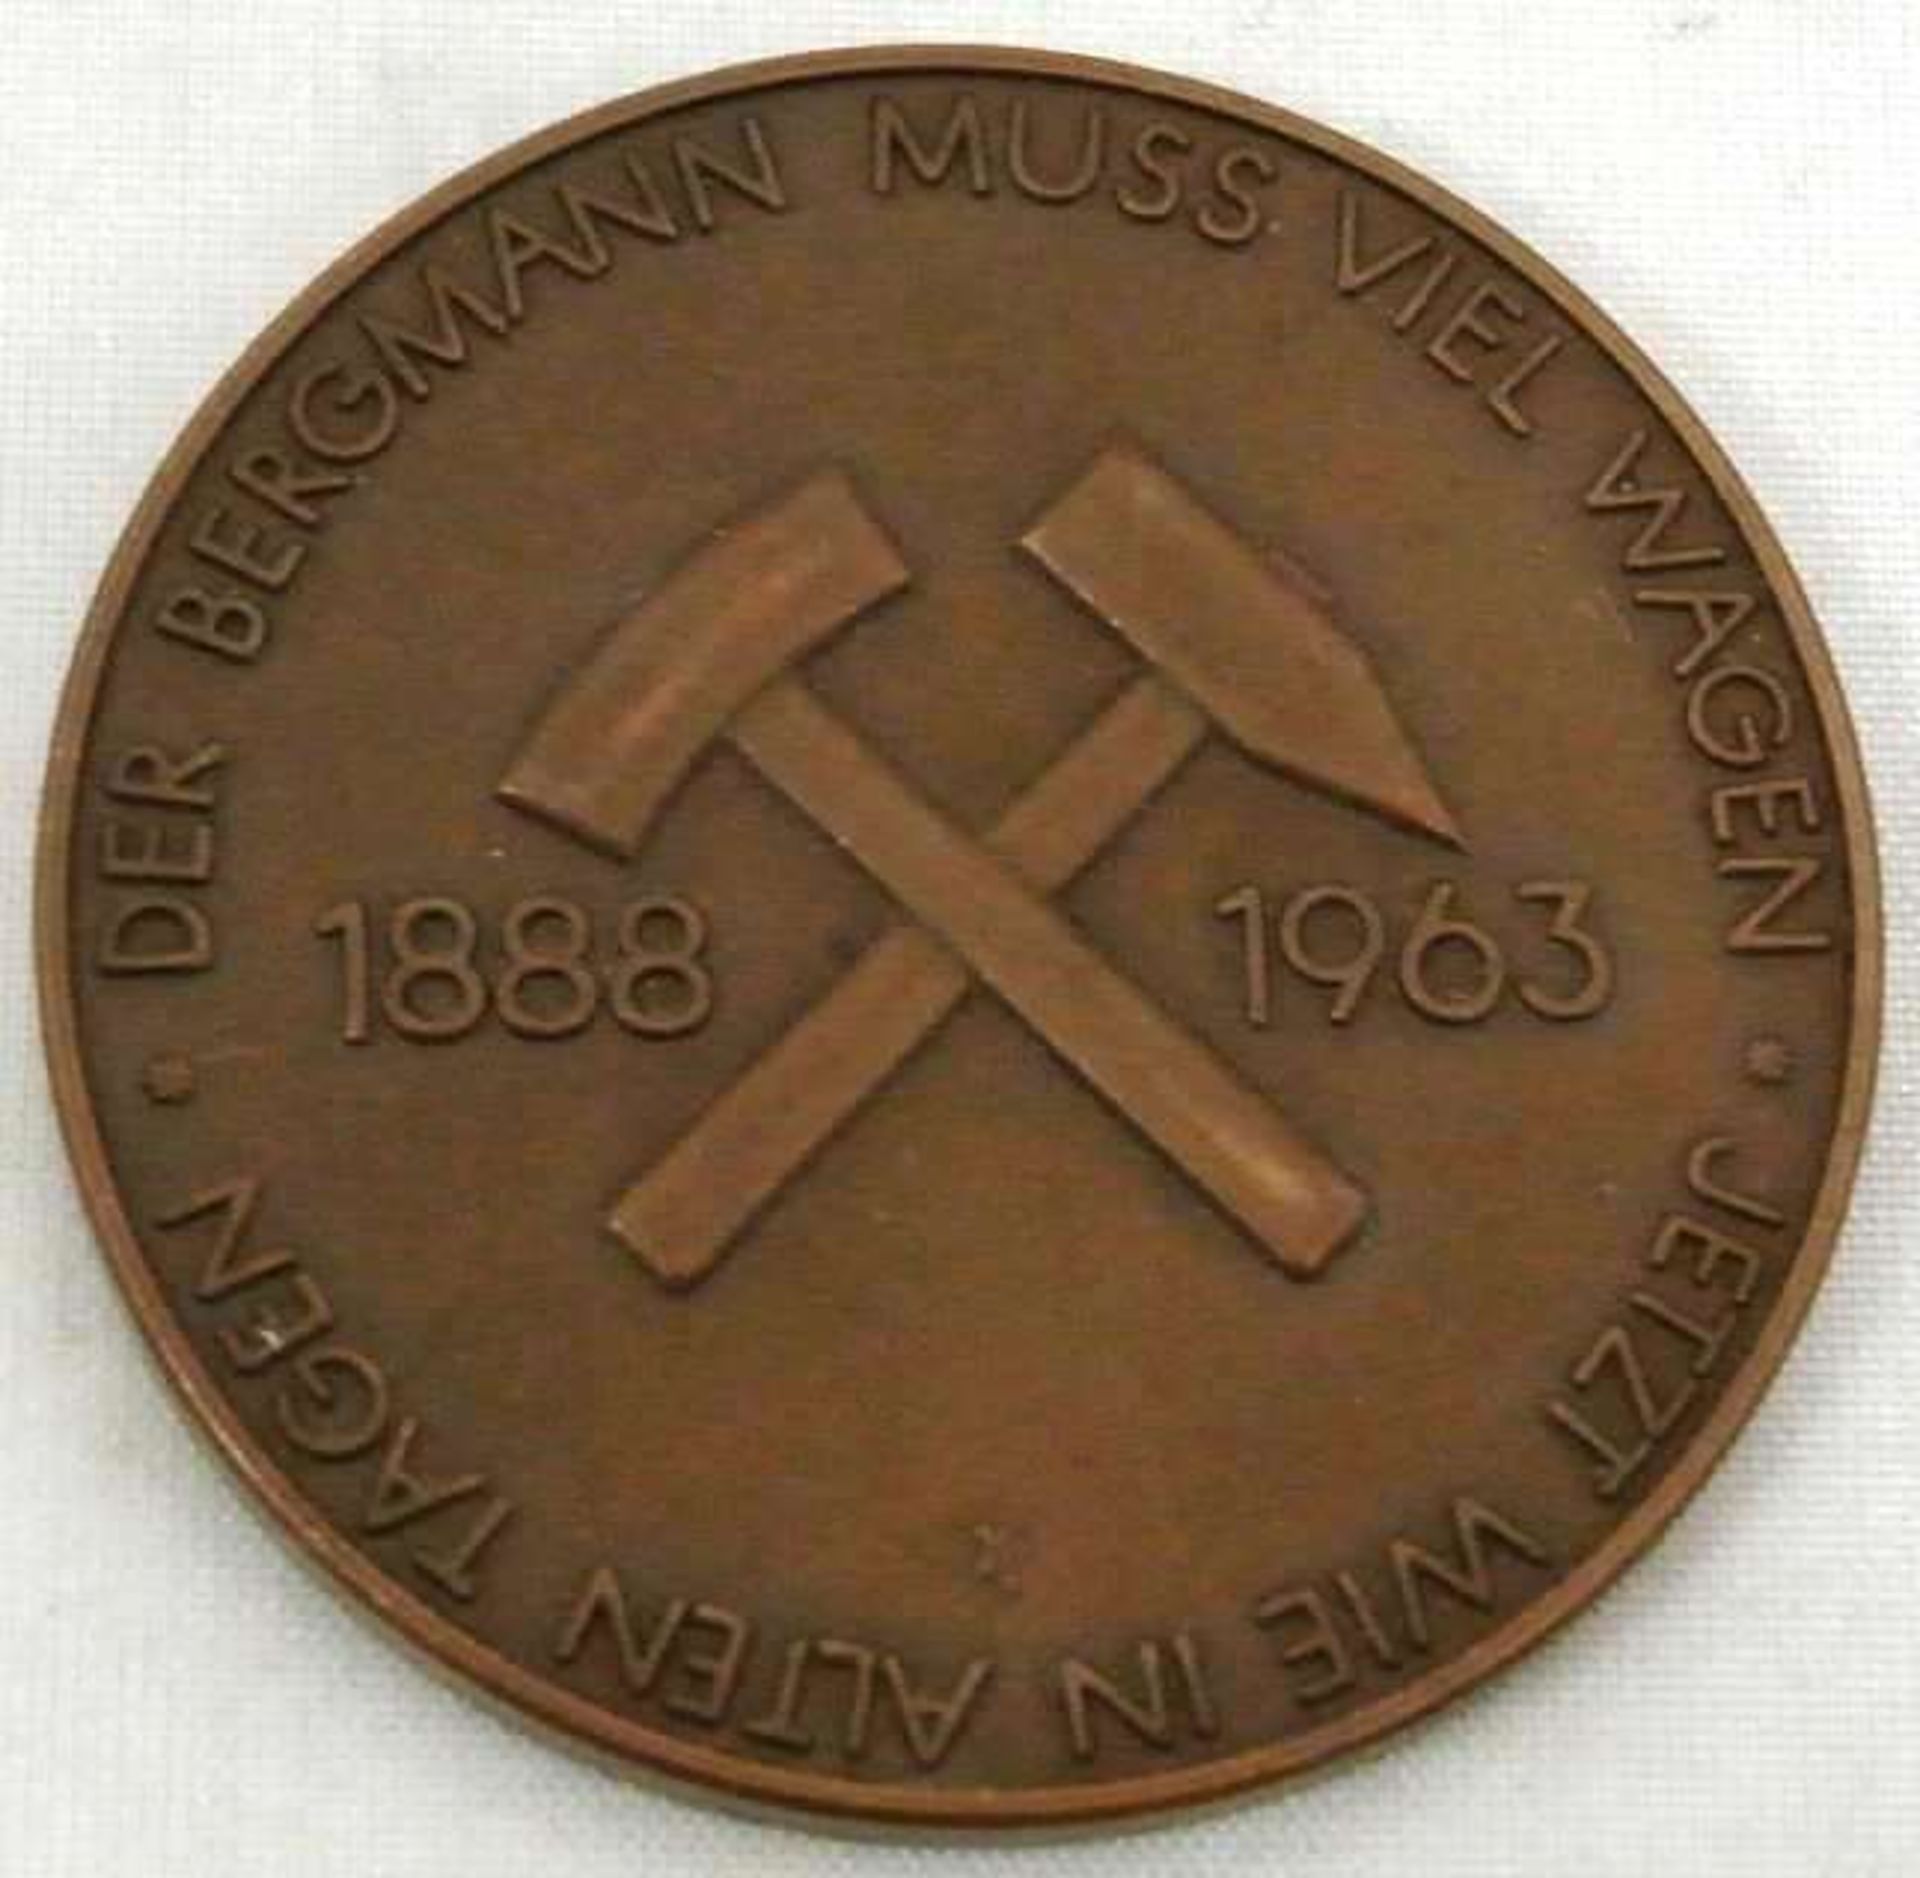 Ausbeute Dortmund Medaille 1963 von Kirchheimer, 75 Jahre Deilmann Bergbau Dortmund Bentheim.